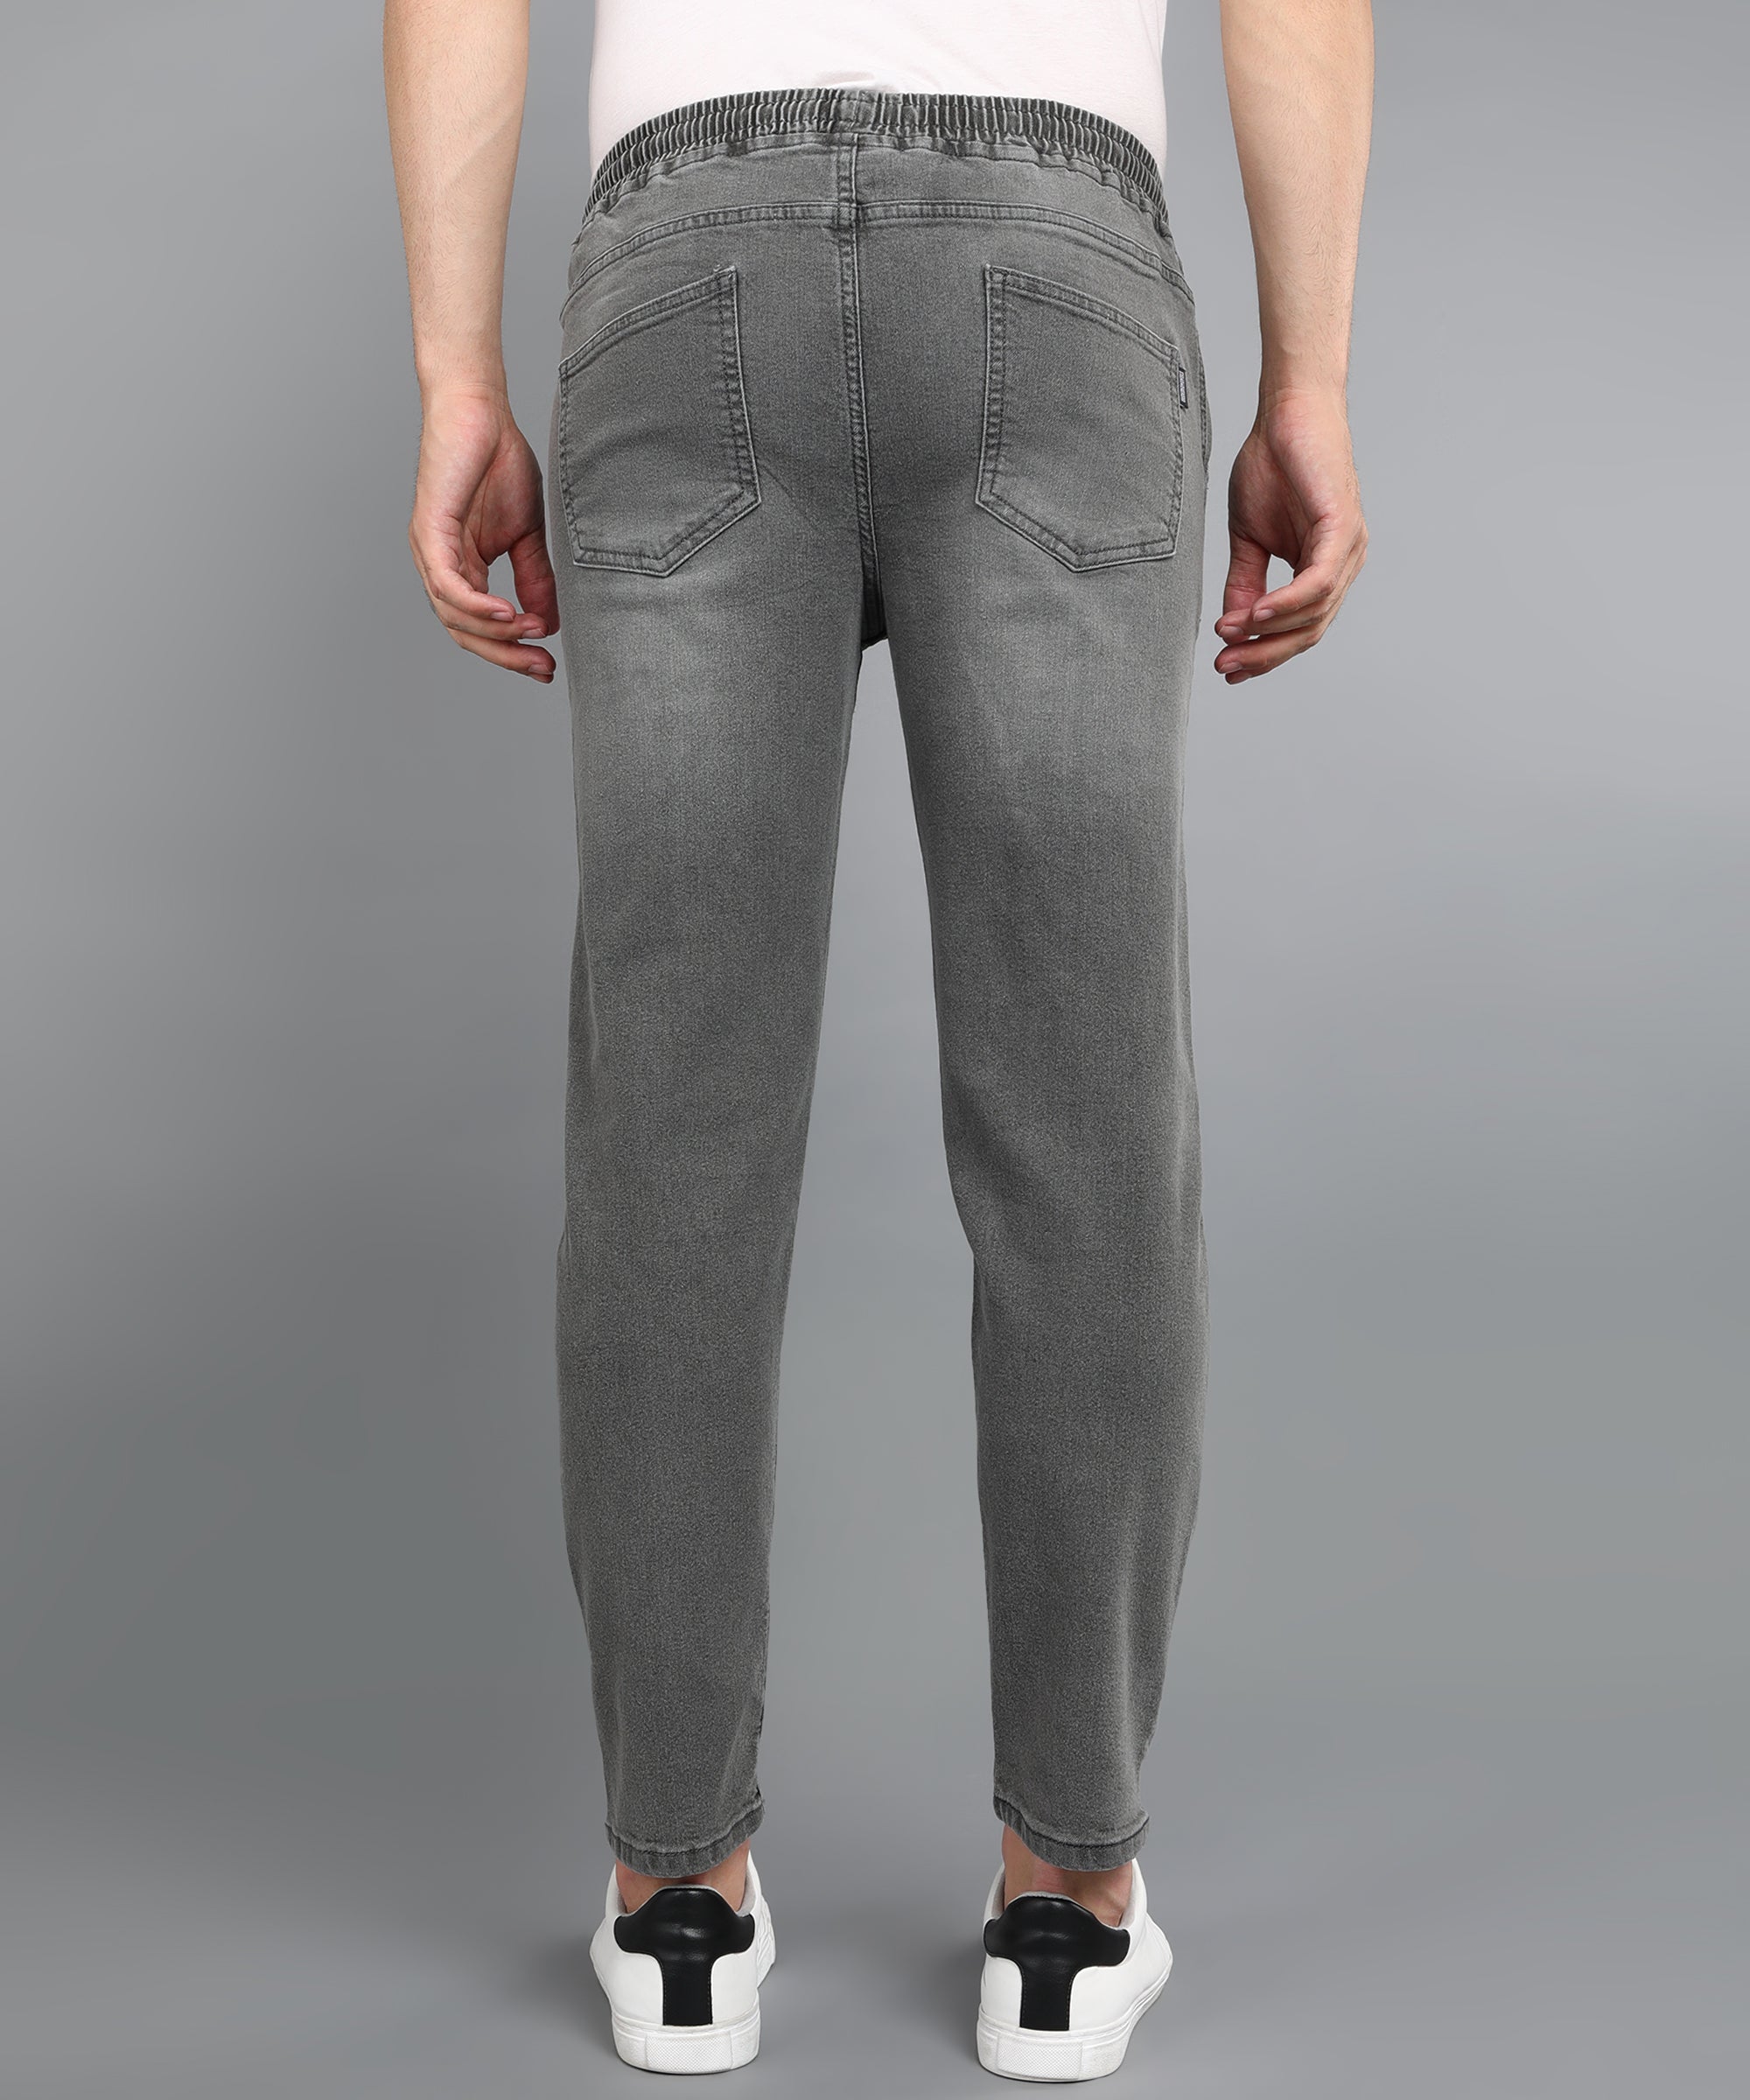 Men's Light Grey Regular Fit Washed Jogger Jeans Stretchable